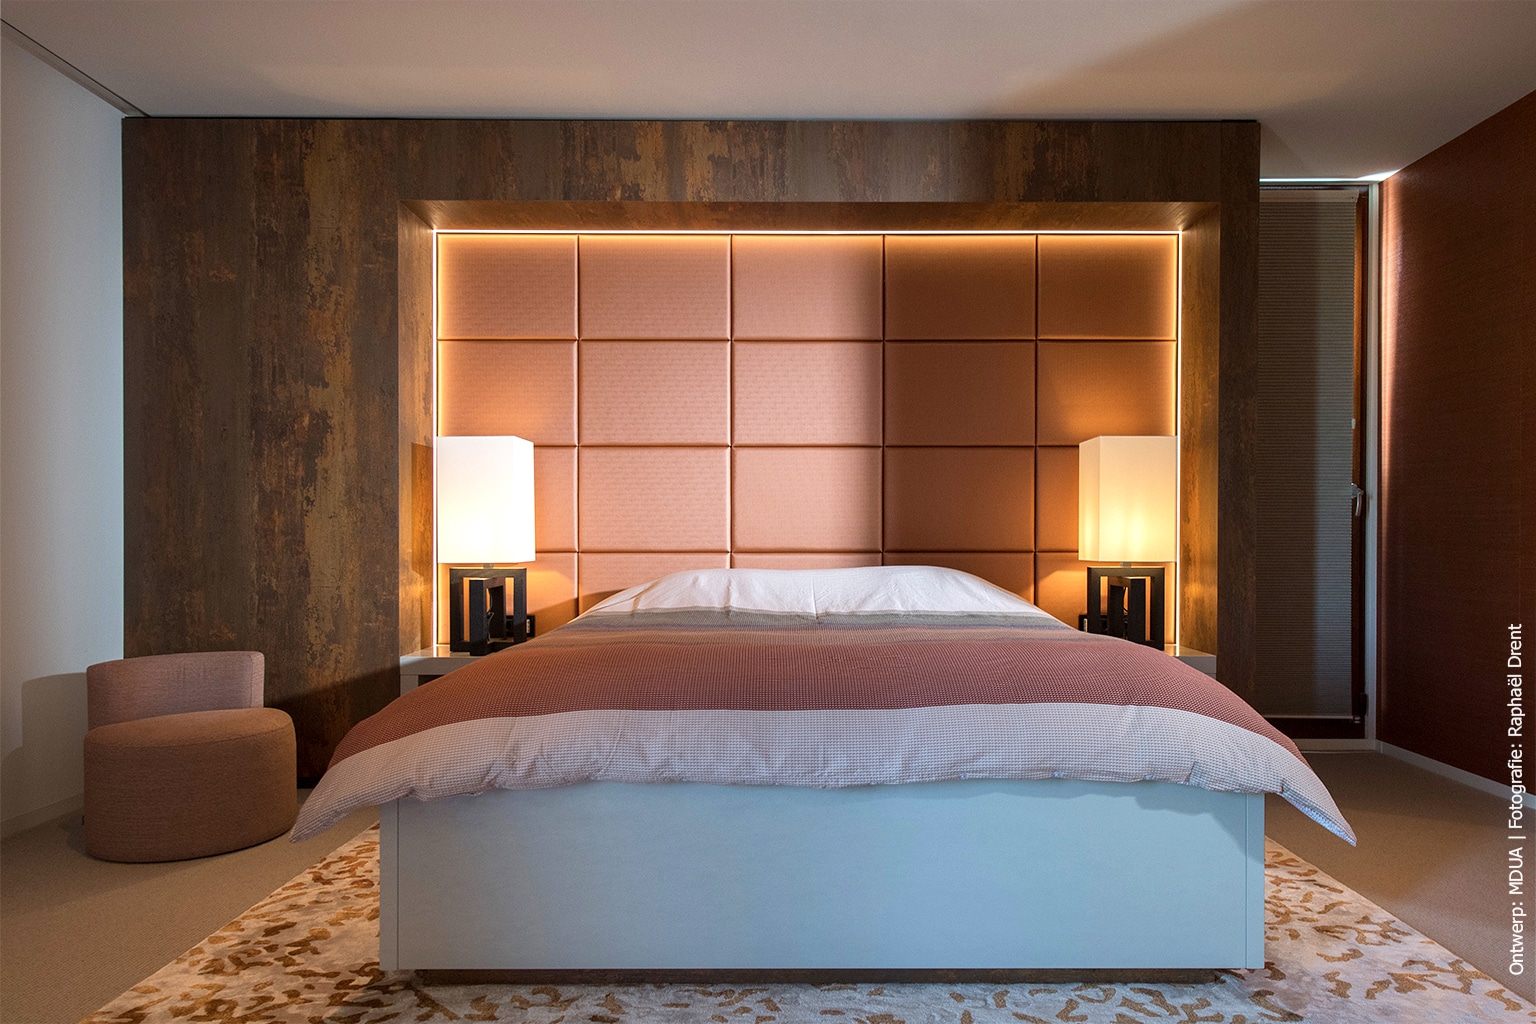 Word gek Miles Baan Hotel chique sfeer in de slaapkamer | DecoLegno